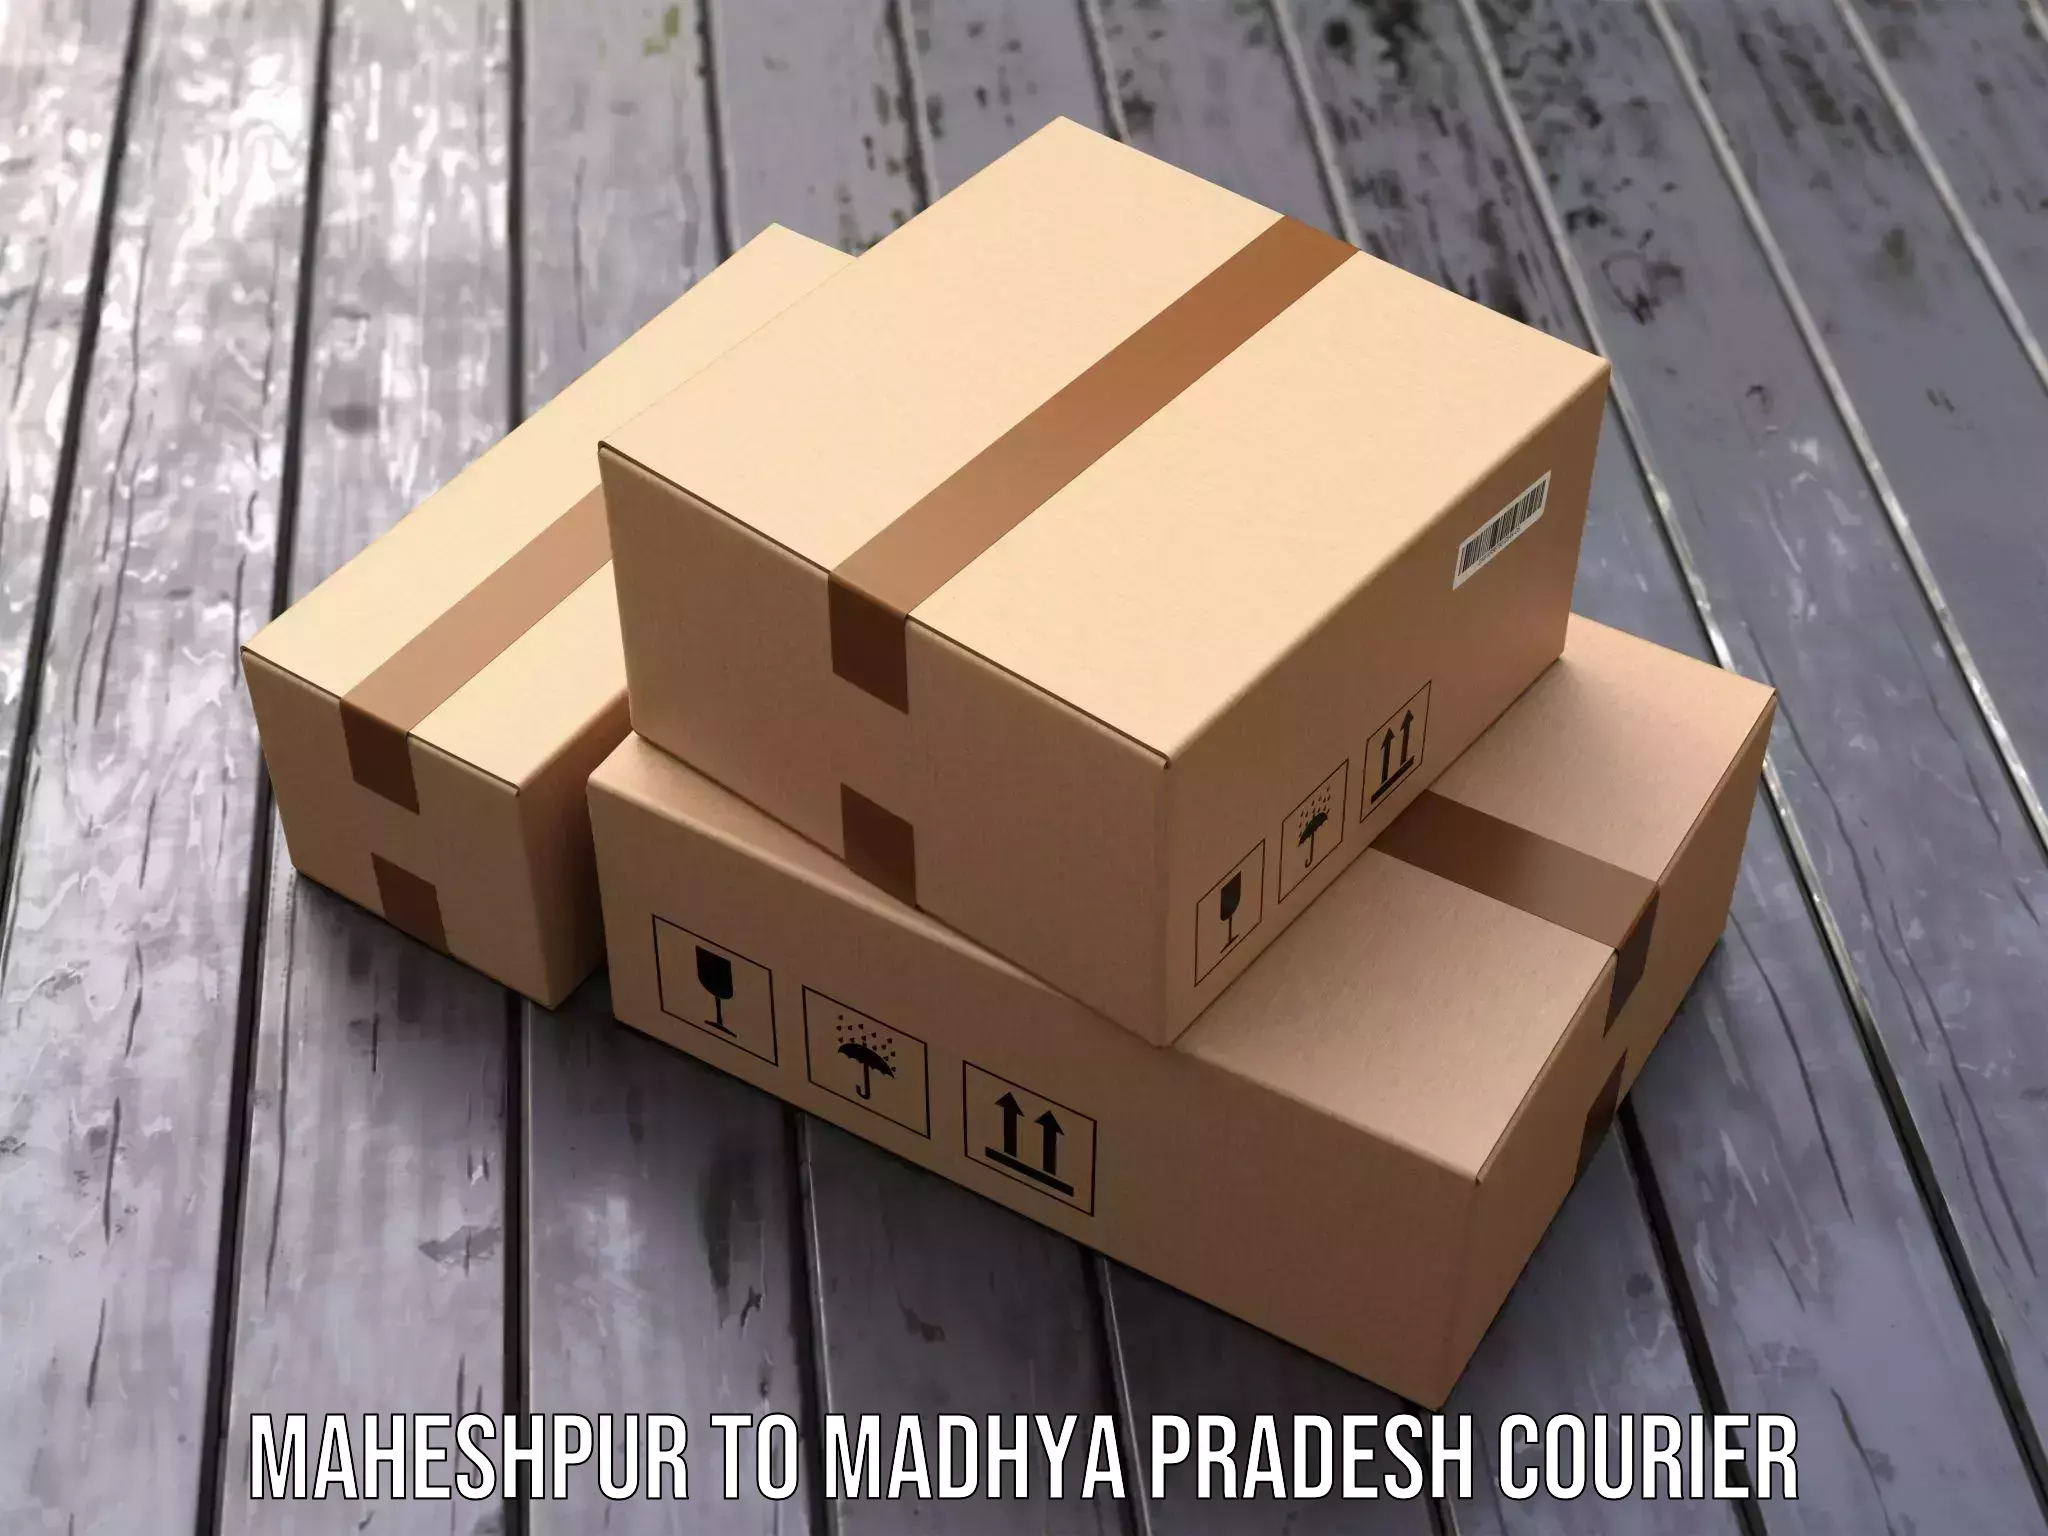 Express package handling in Maheshpur to Madhya Pradesh